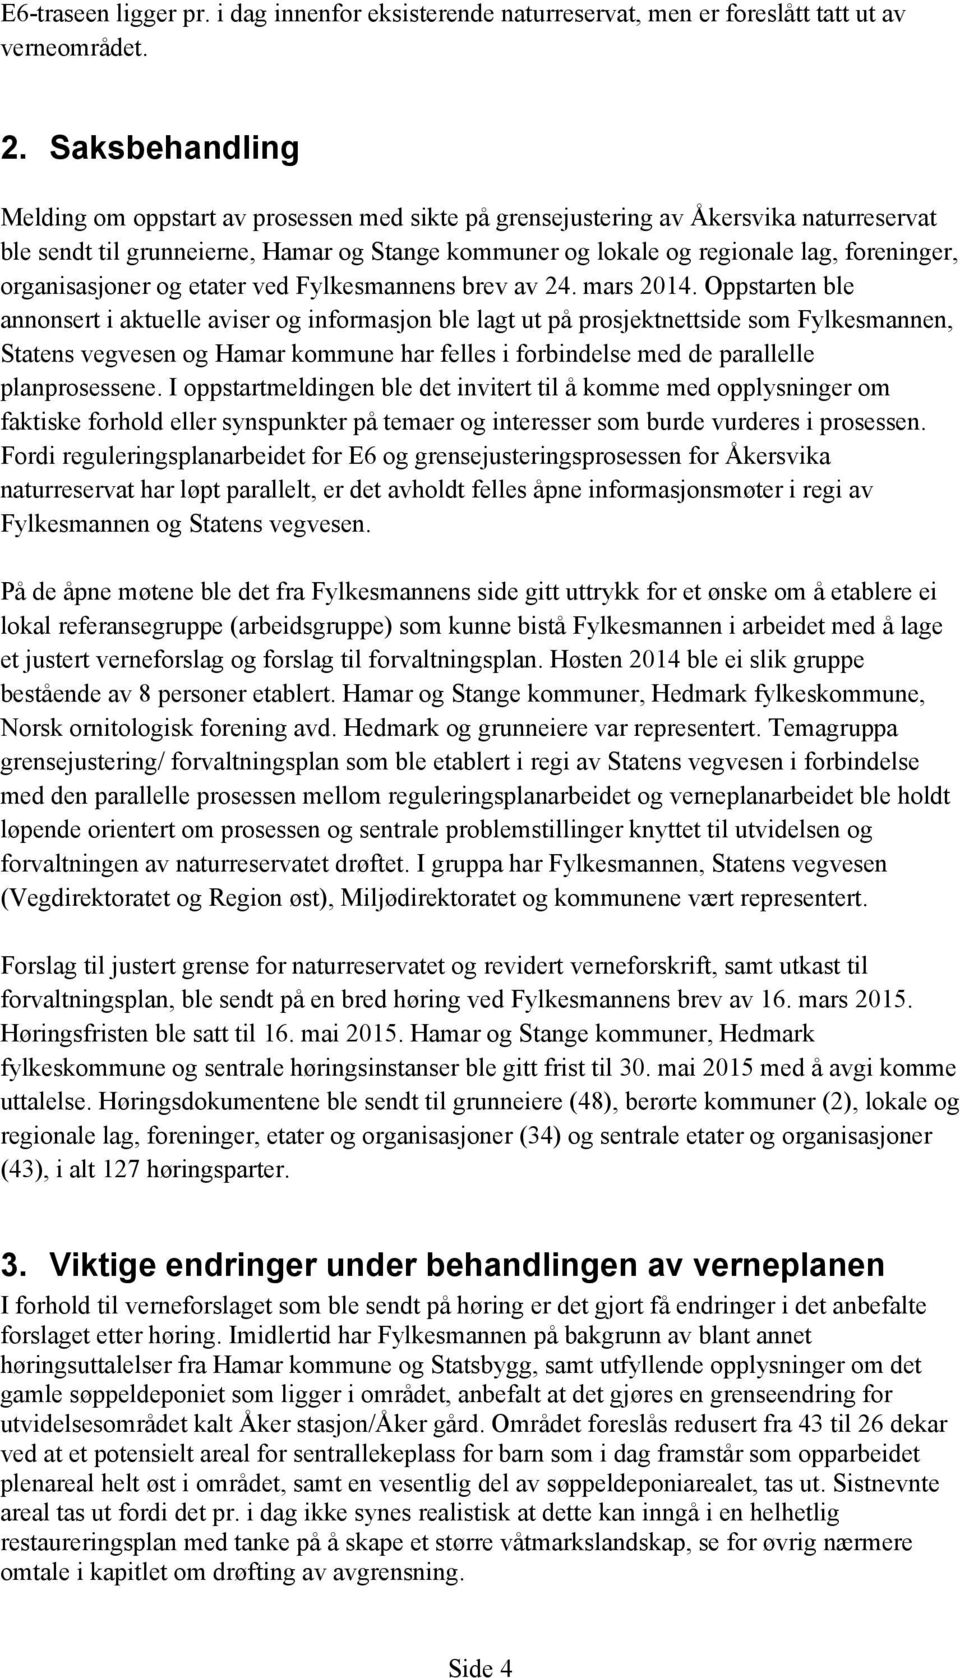 organisasjoner og etater ved Fylkesmannens brev av 24. mars 2014.